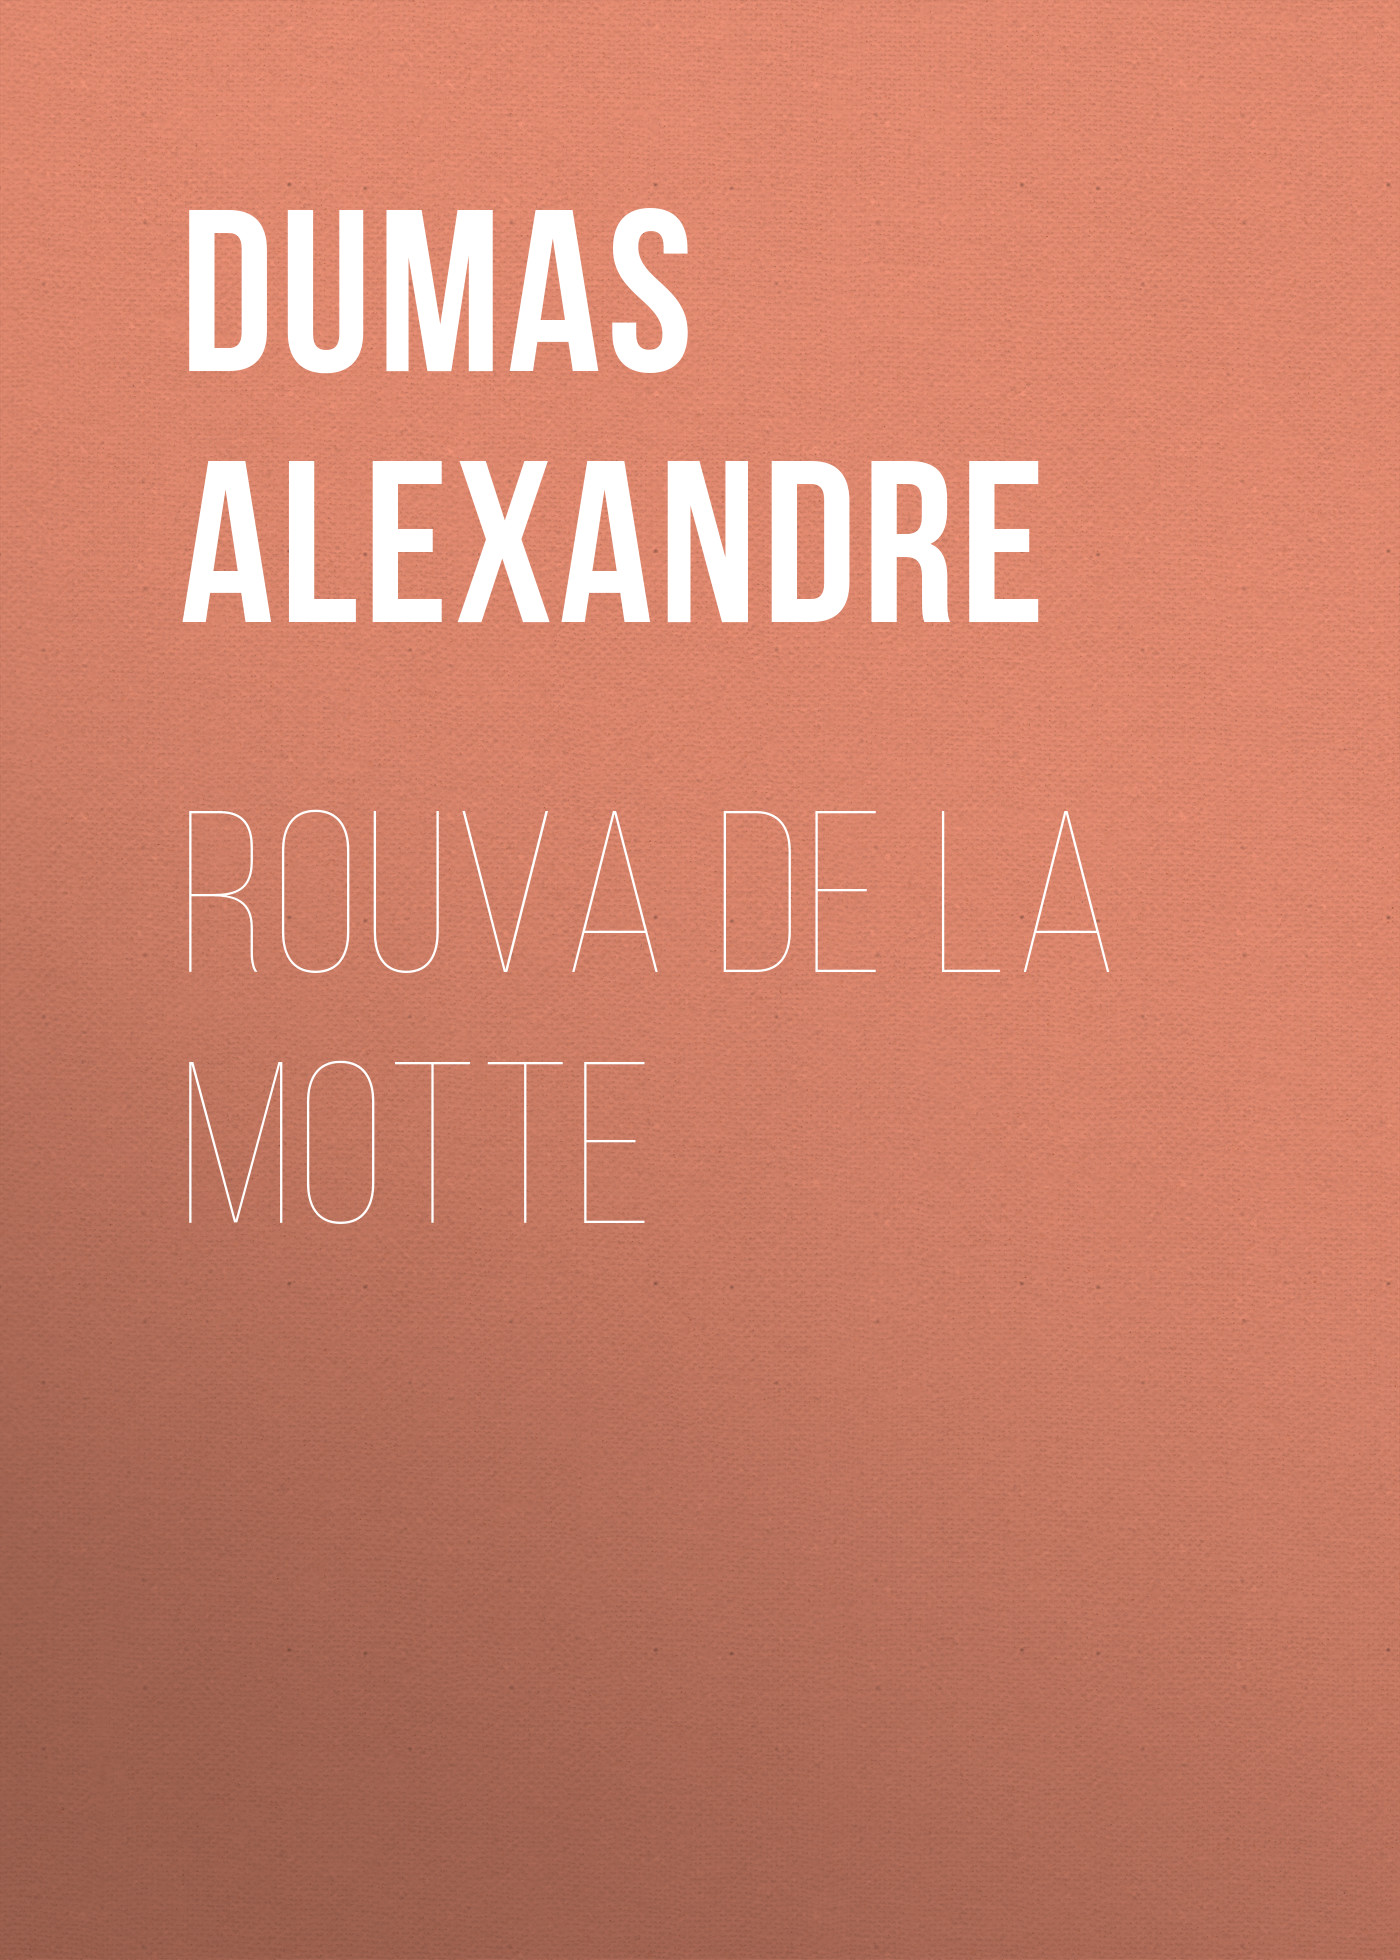 Книга Rouva de la Motte из серии , созданная Alexandre Dumas, может относится к жанру Литература 19 века, Зарубежная старинная литература, Зарубежная классика. Стоимость электронной книги Rouva de la Motte с идентификатором 25203639 составляет 0 руб.